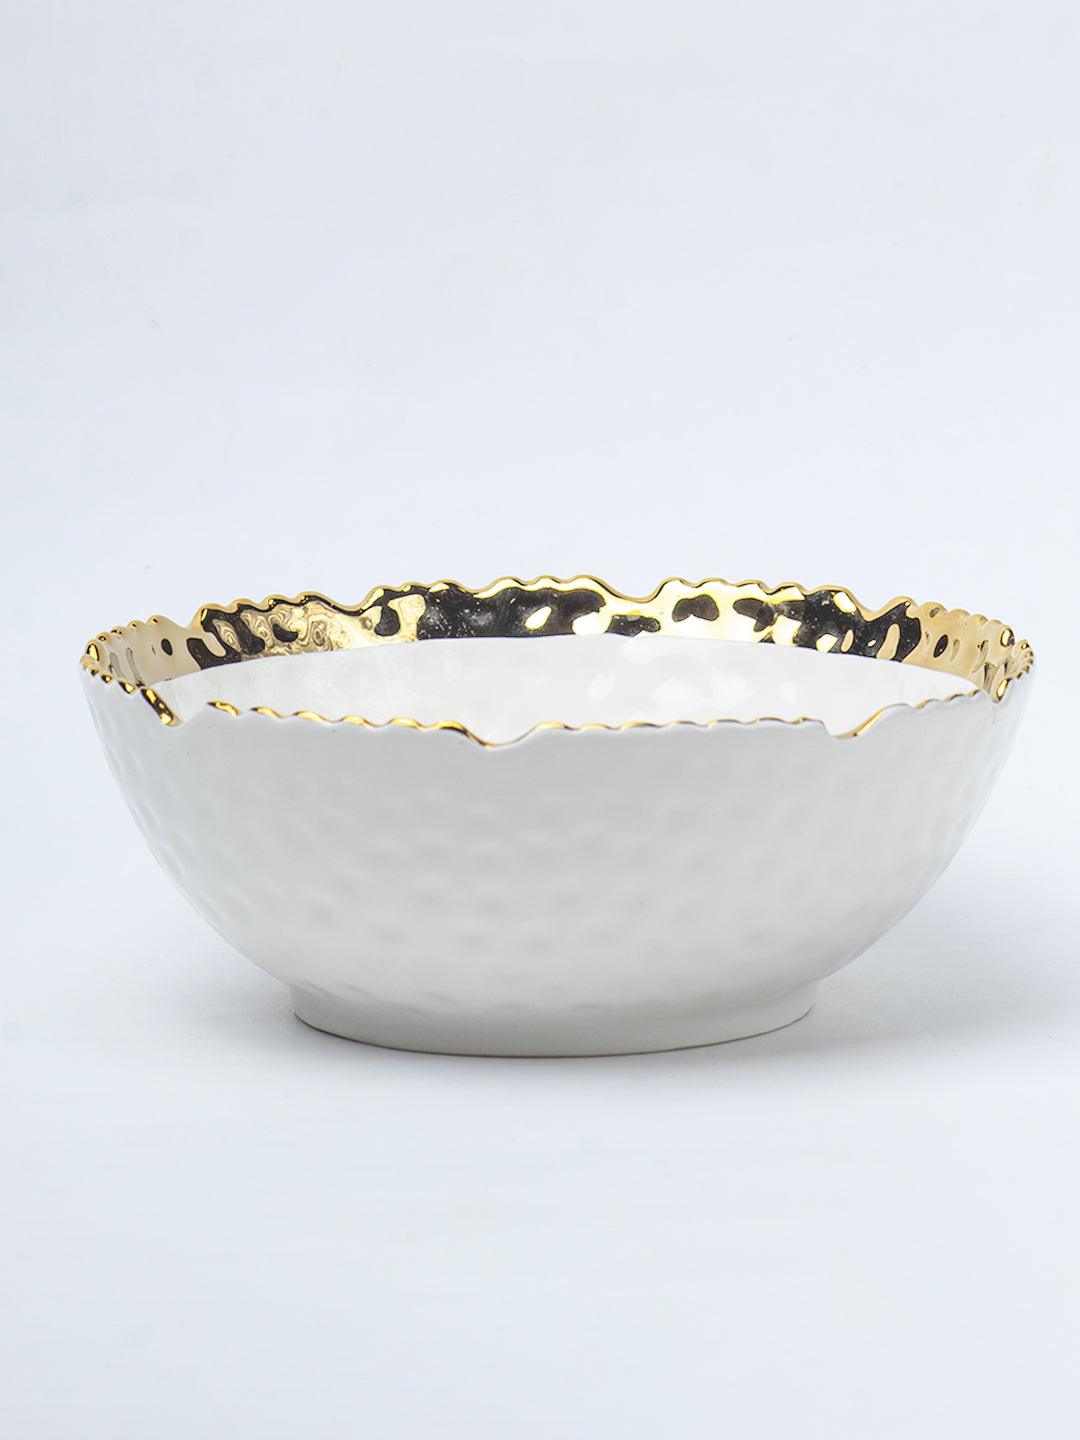 Antique Off White Ceramic Round Serving Dish - 18 x 18 x 7CM - 3